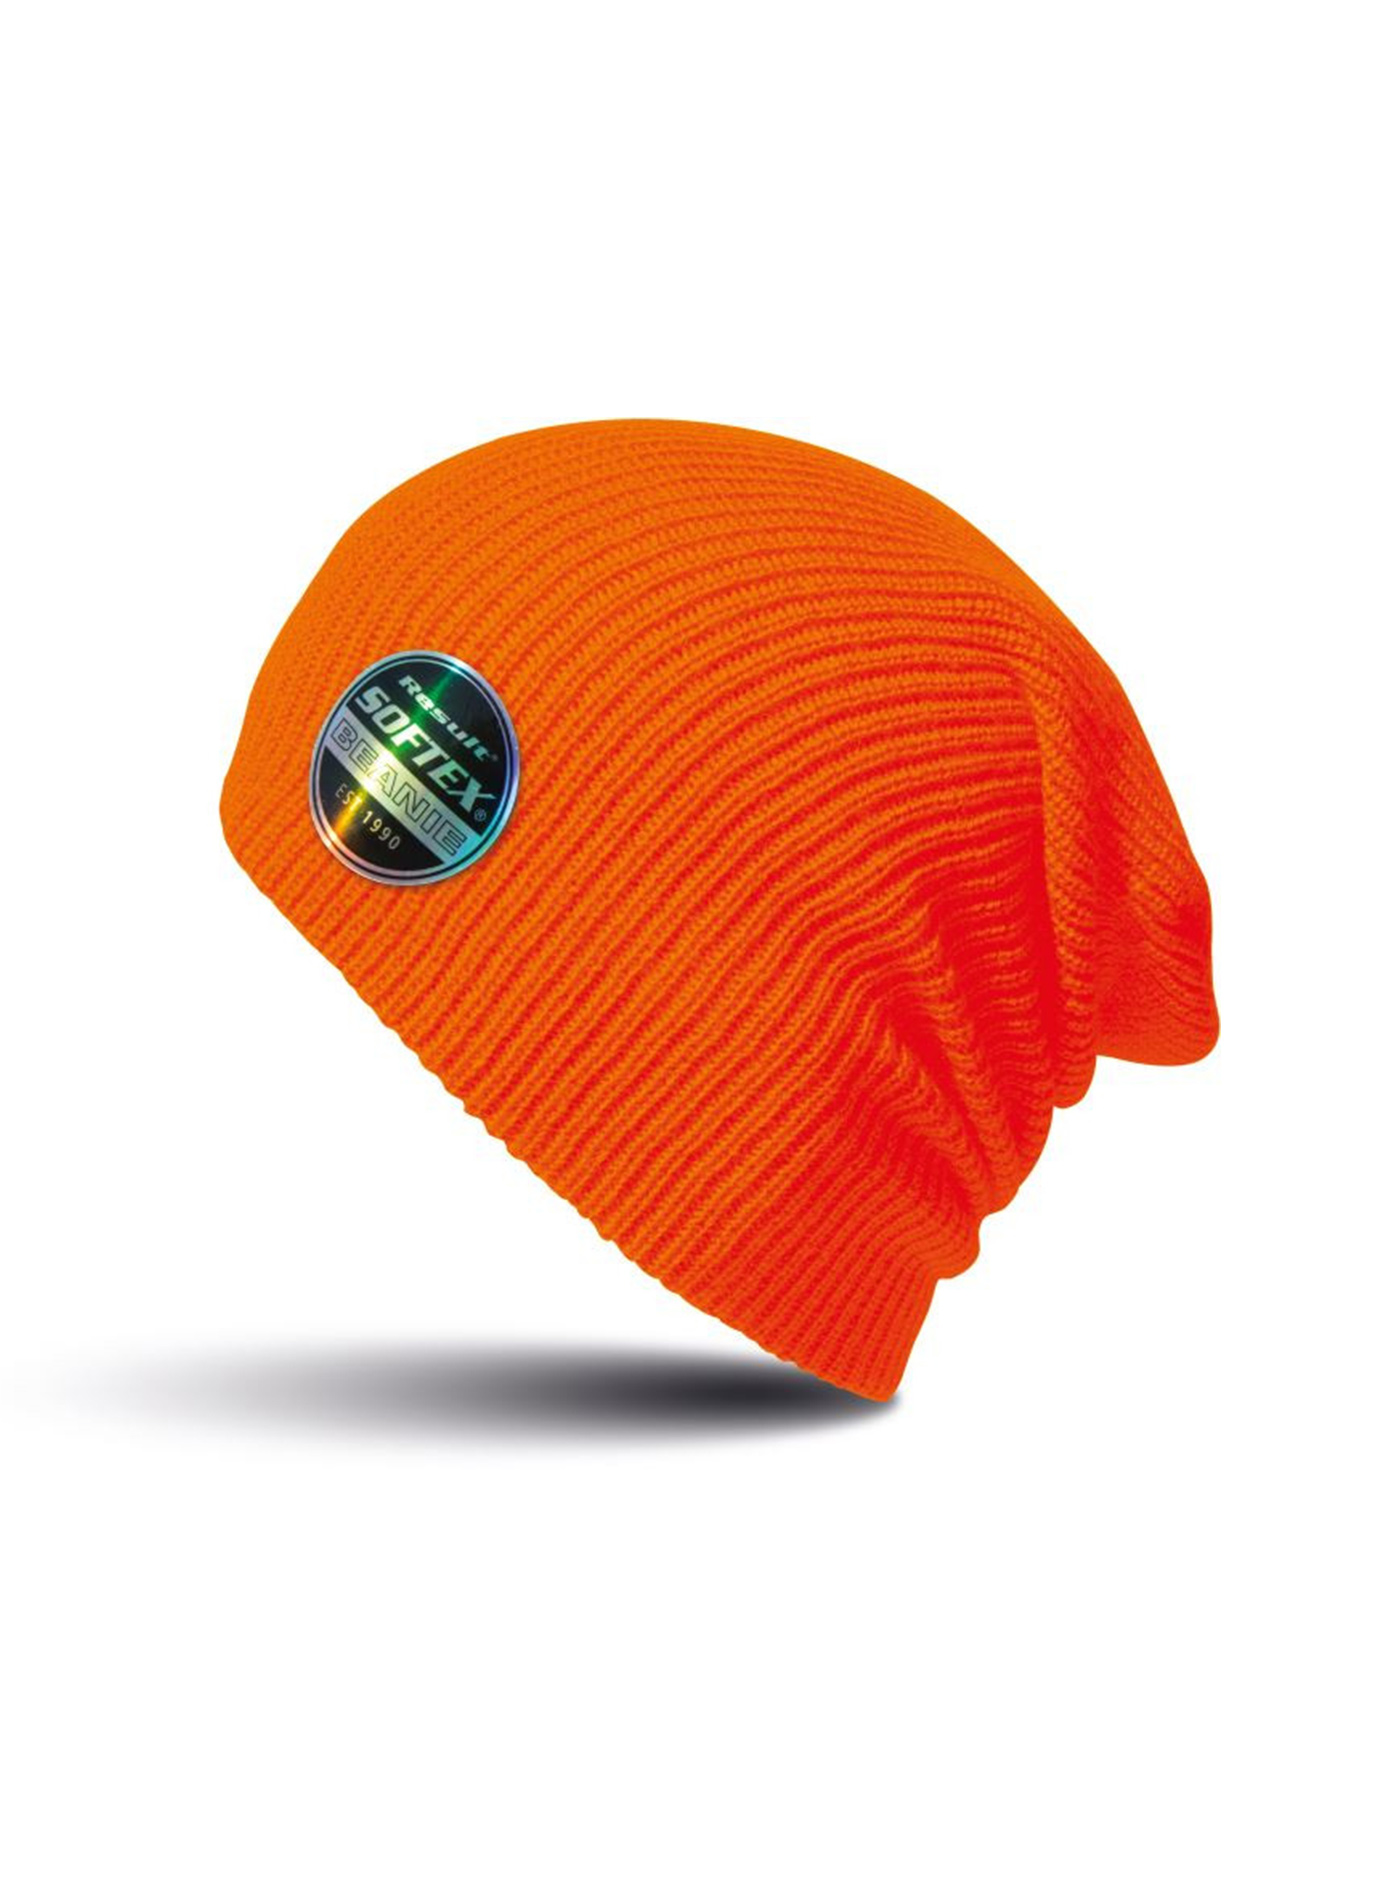 Čepice Result headwear softex beanie - Zářivá oranžová univerzal